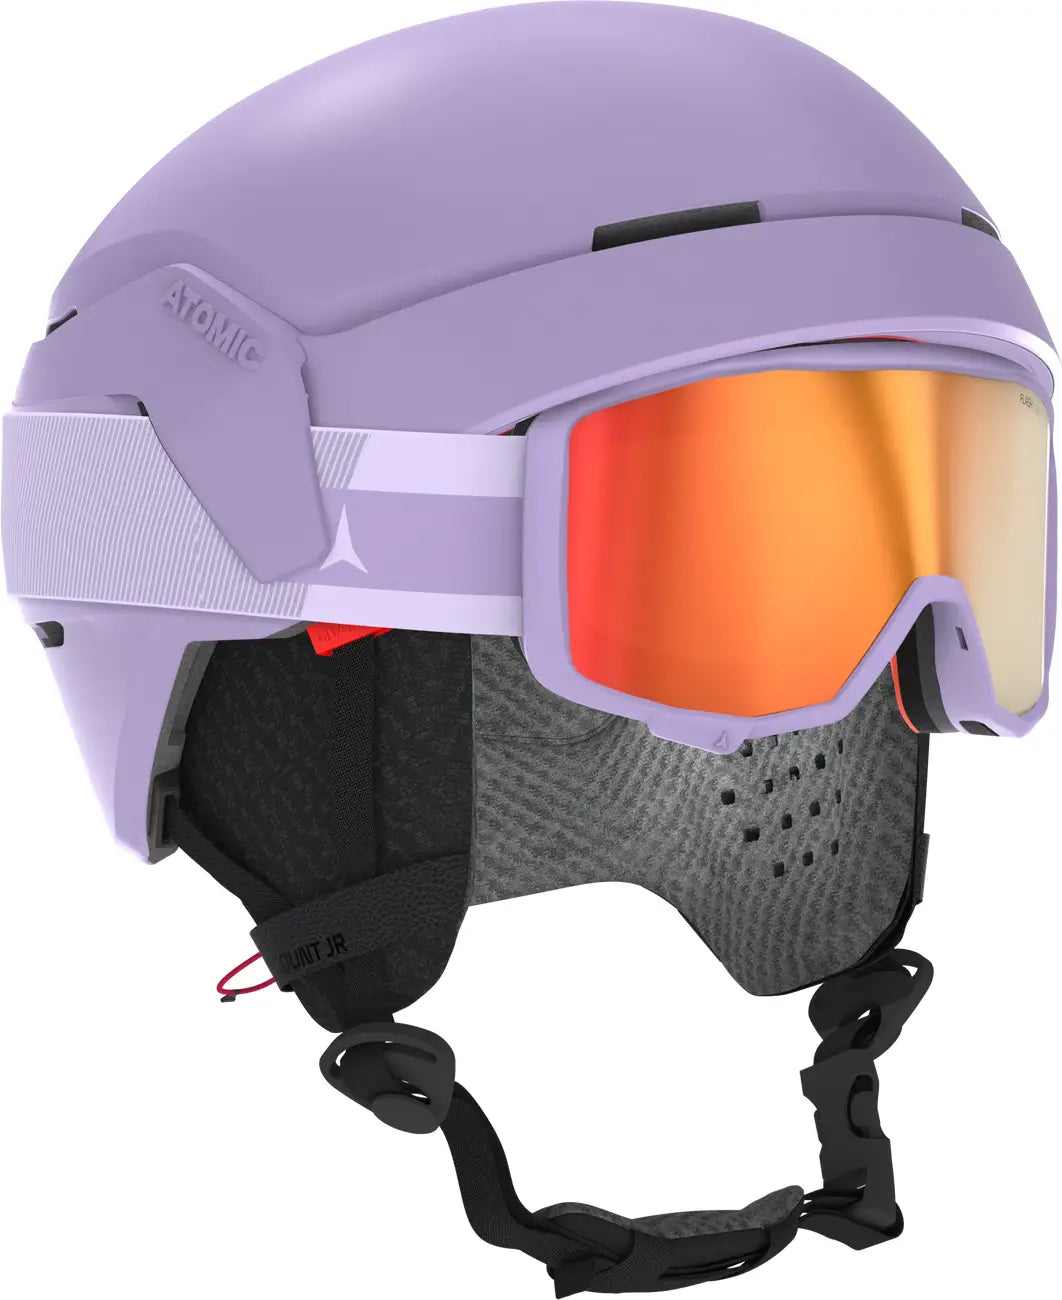 特注製品未使用保管品nAtomic アトミックnFIS 対応ヘルメット スキー